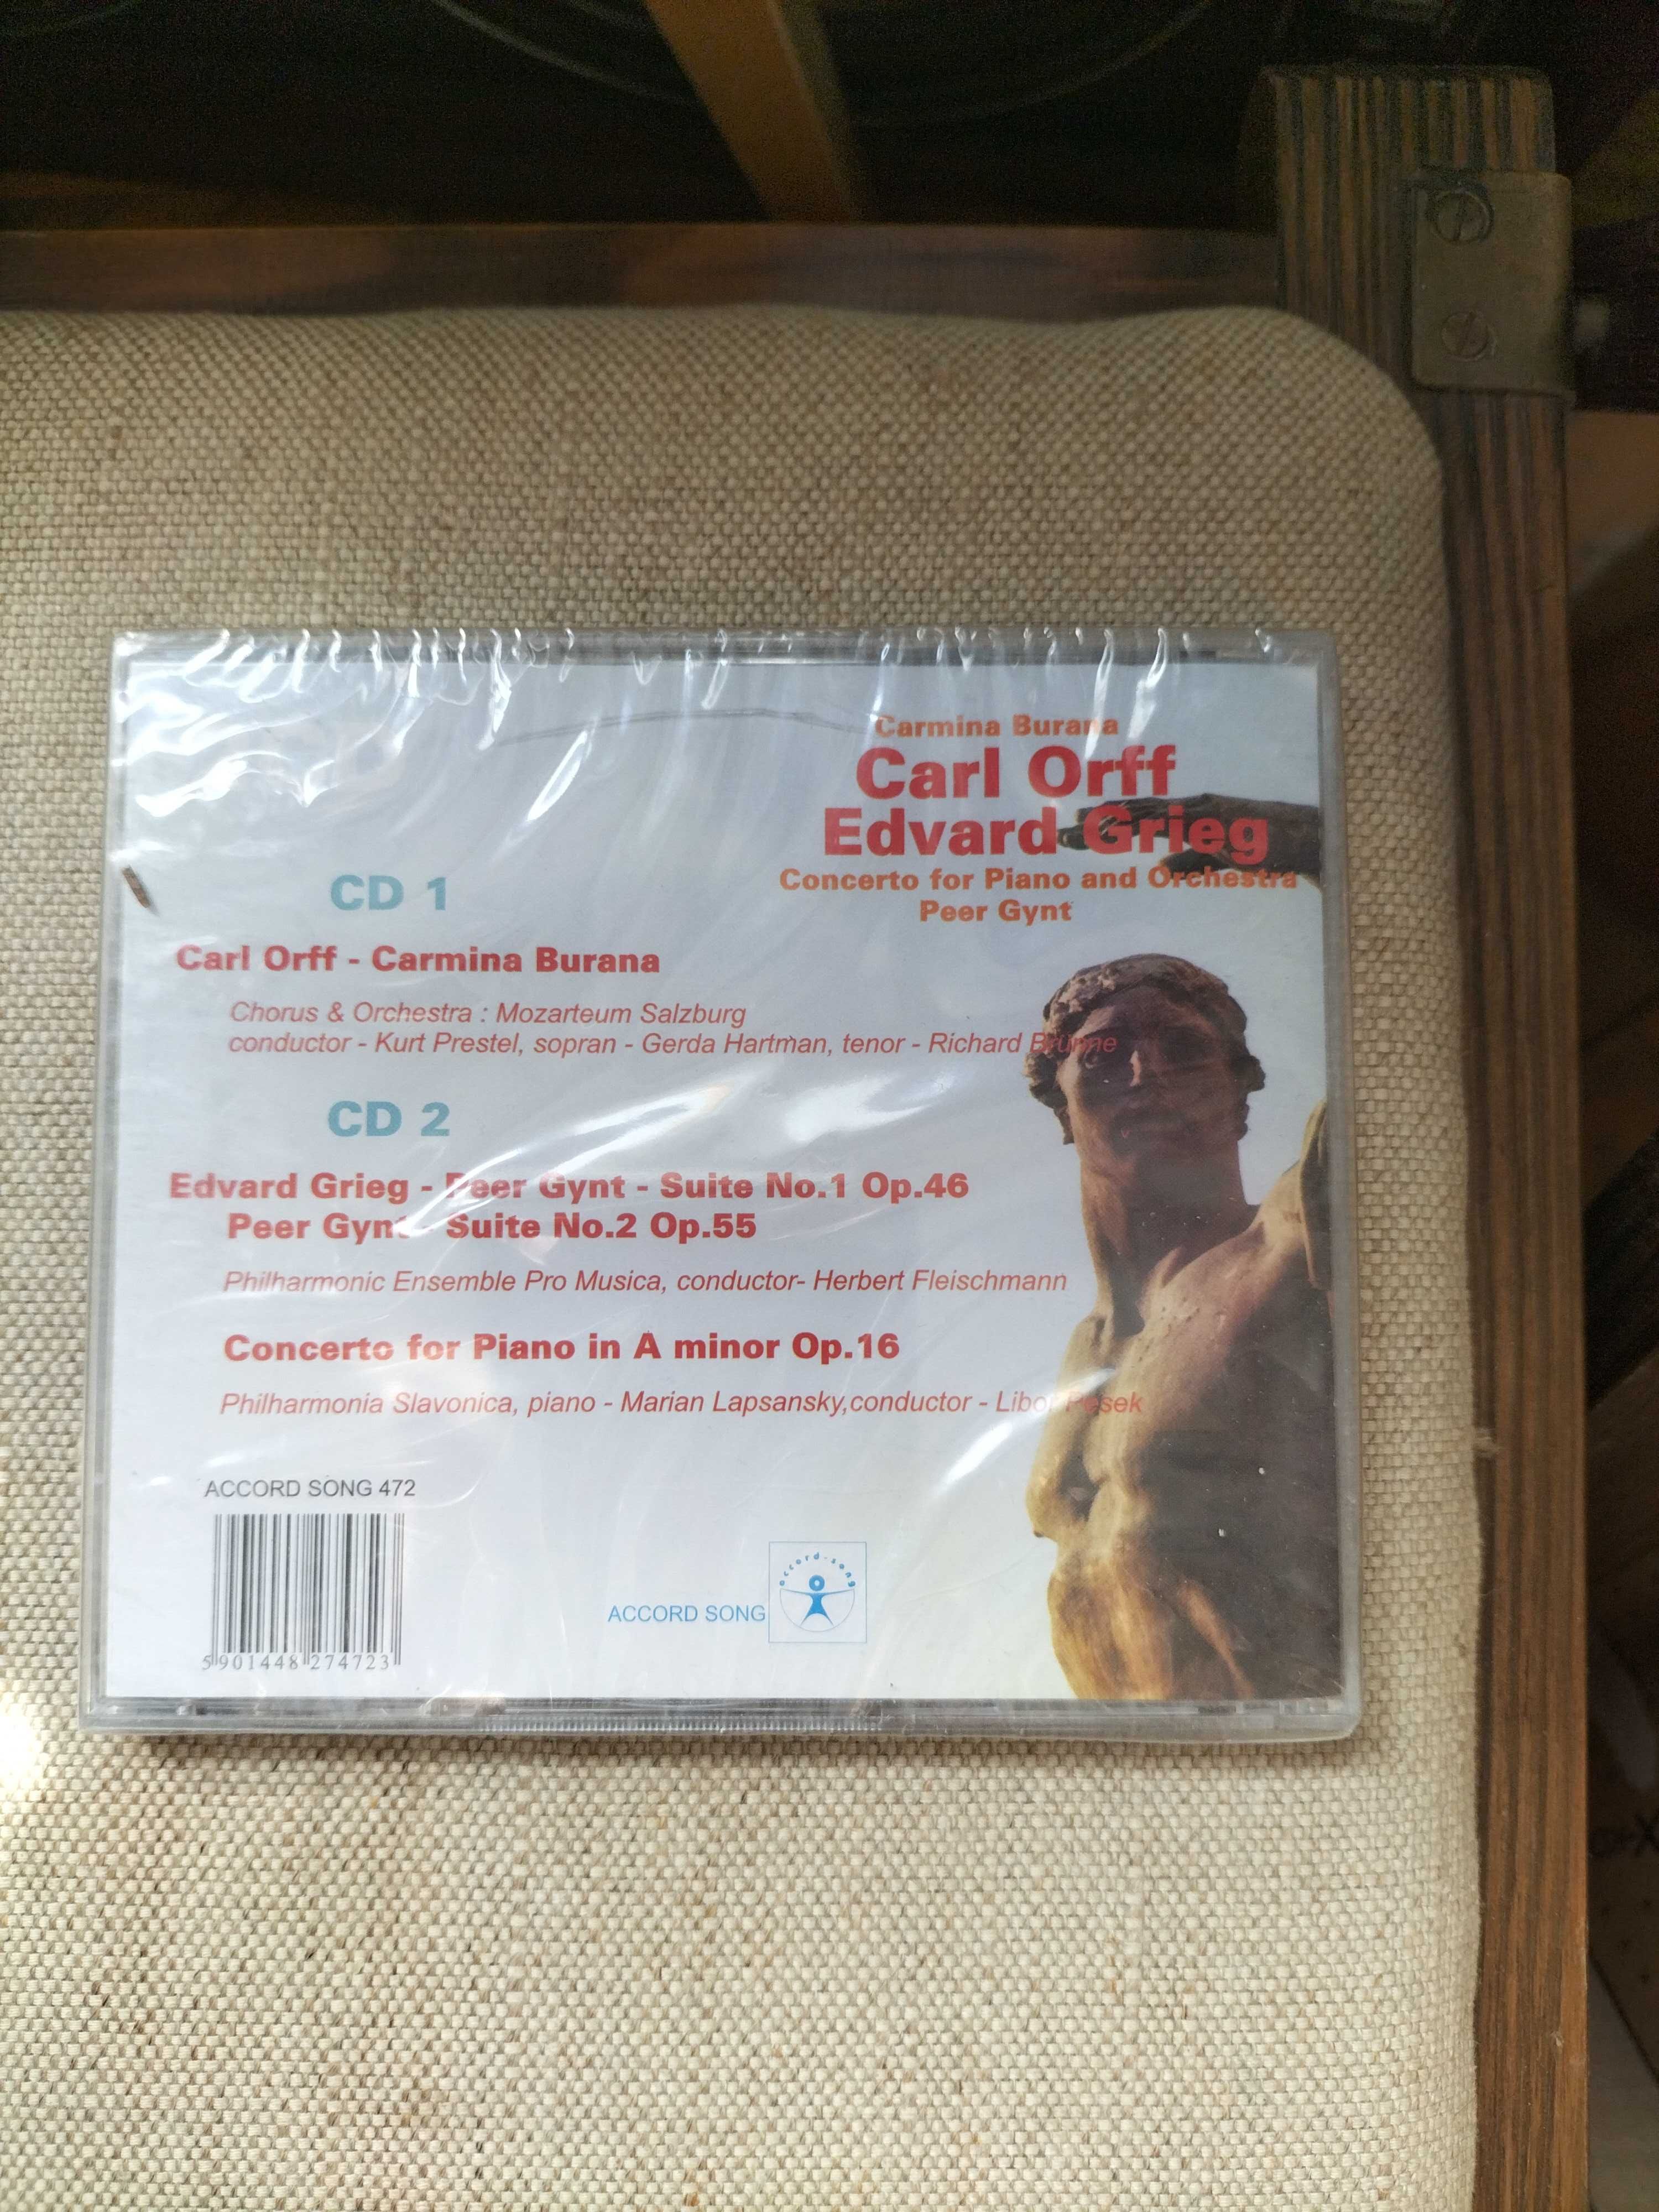 Nowe CD Edvard Grieg   2 cd" Carl Orff Carmina Burana "